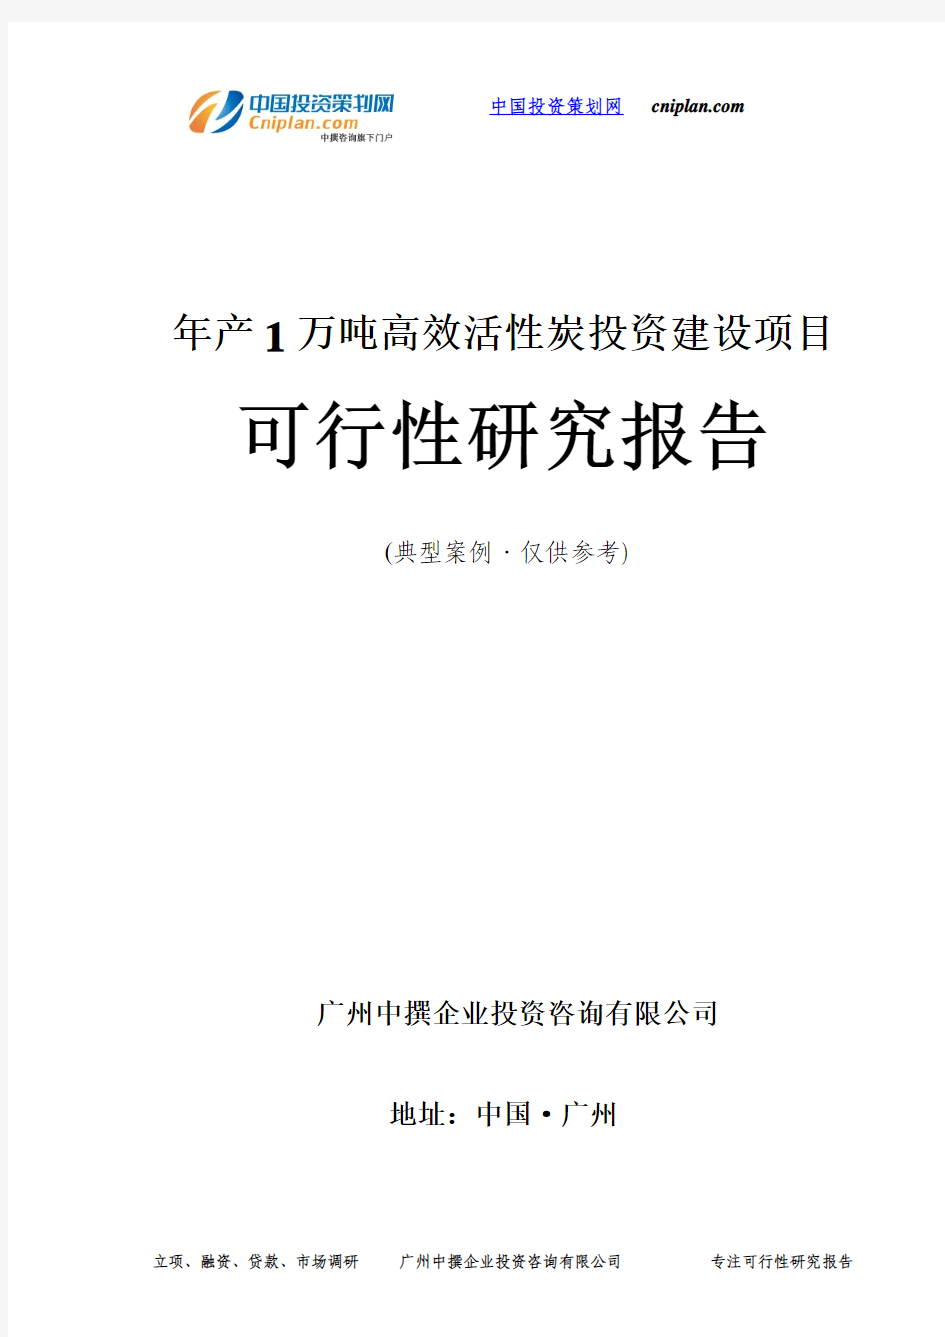 年产1万吨高效活性炭投资建设项目可行性研究报告-广州中撰咨询